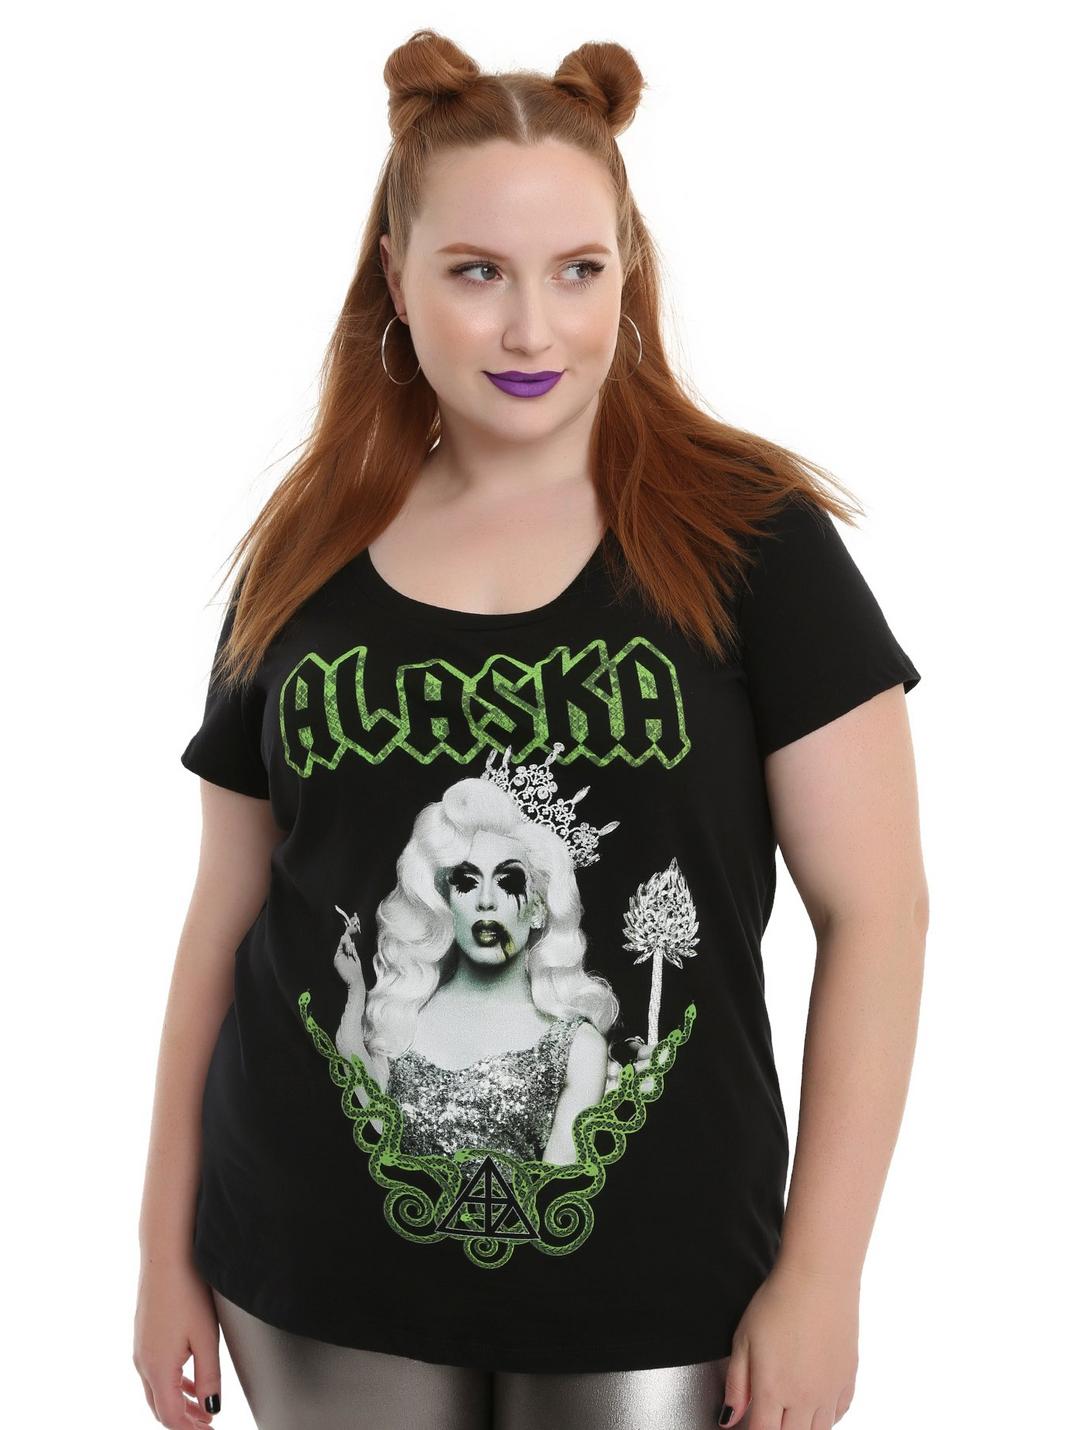 Drag Queen Merch Alaska Girls T-Shirt Plus Size, BLACK, hi-res